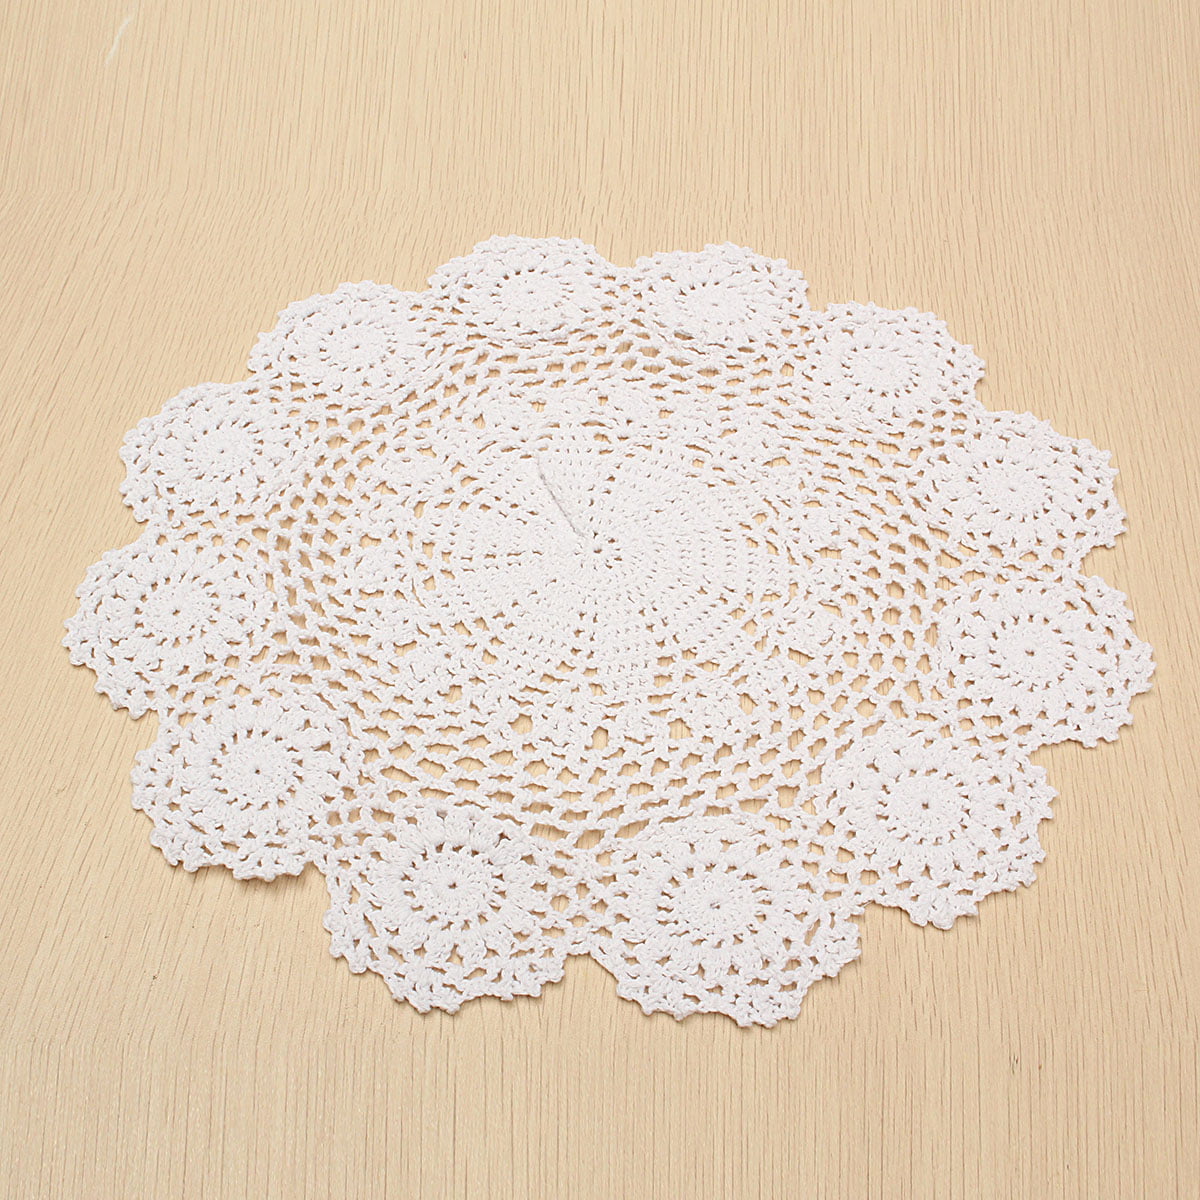 Unique white crochet lace flower-shaped doily